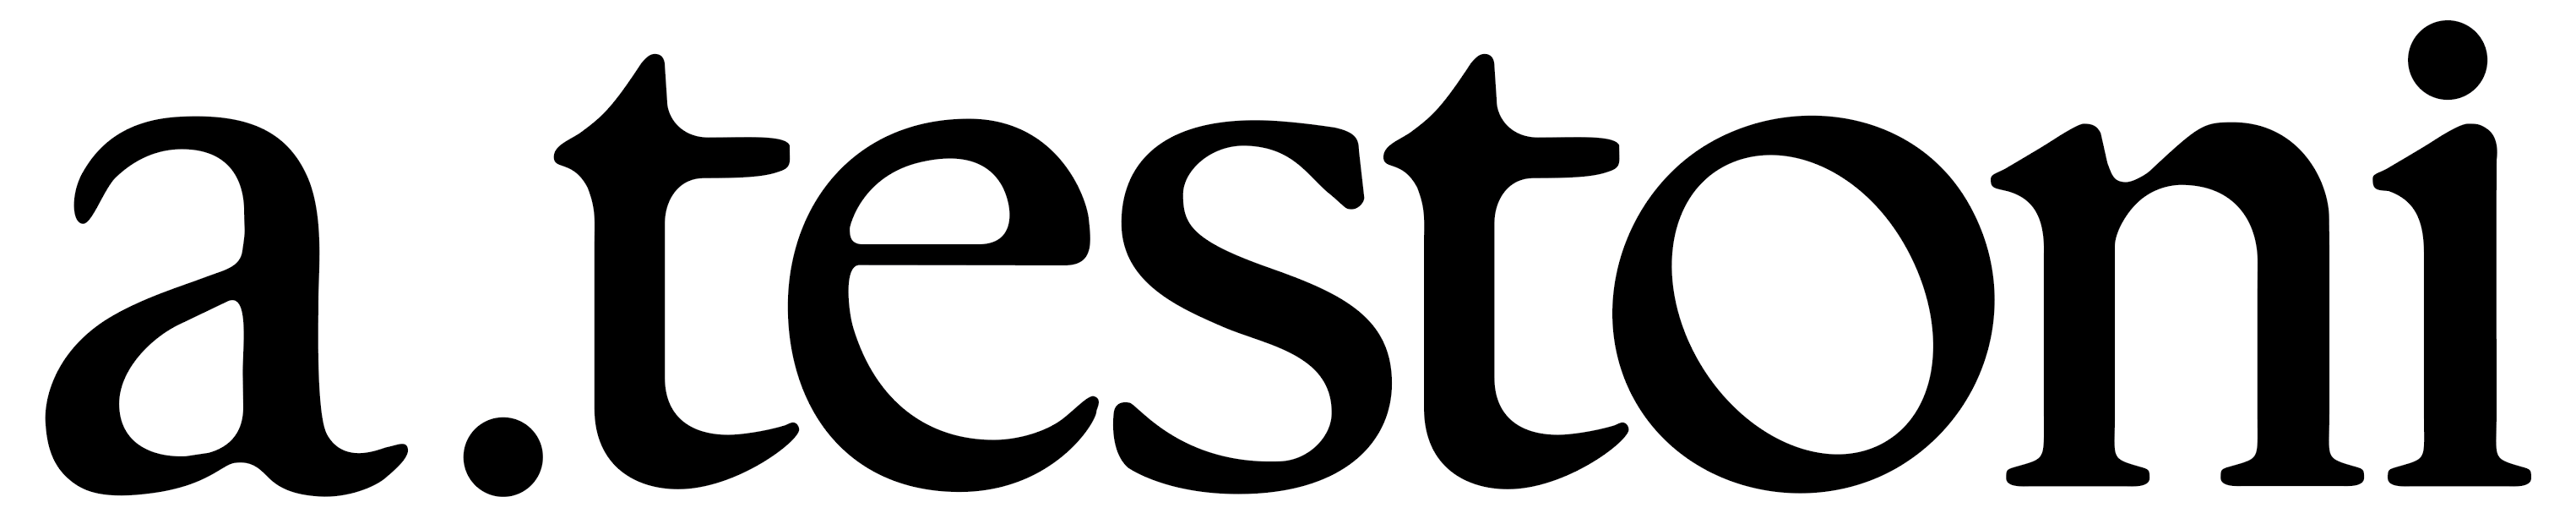 A.Testoni Logo